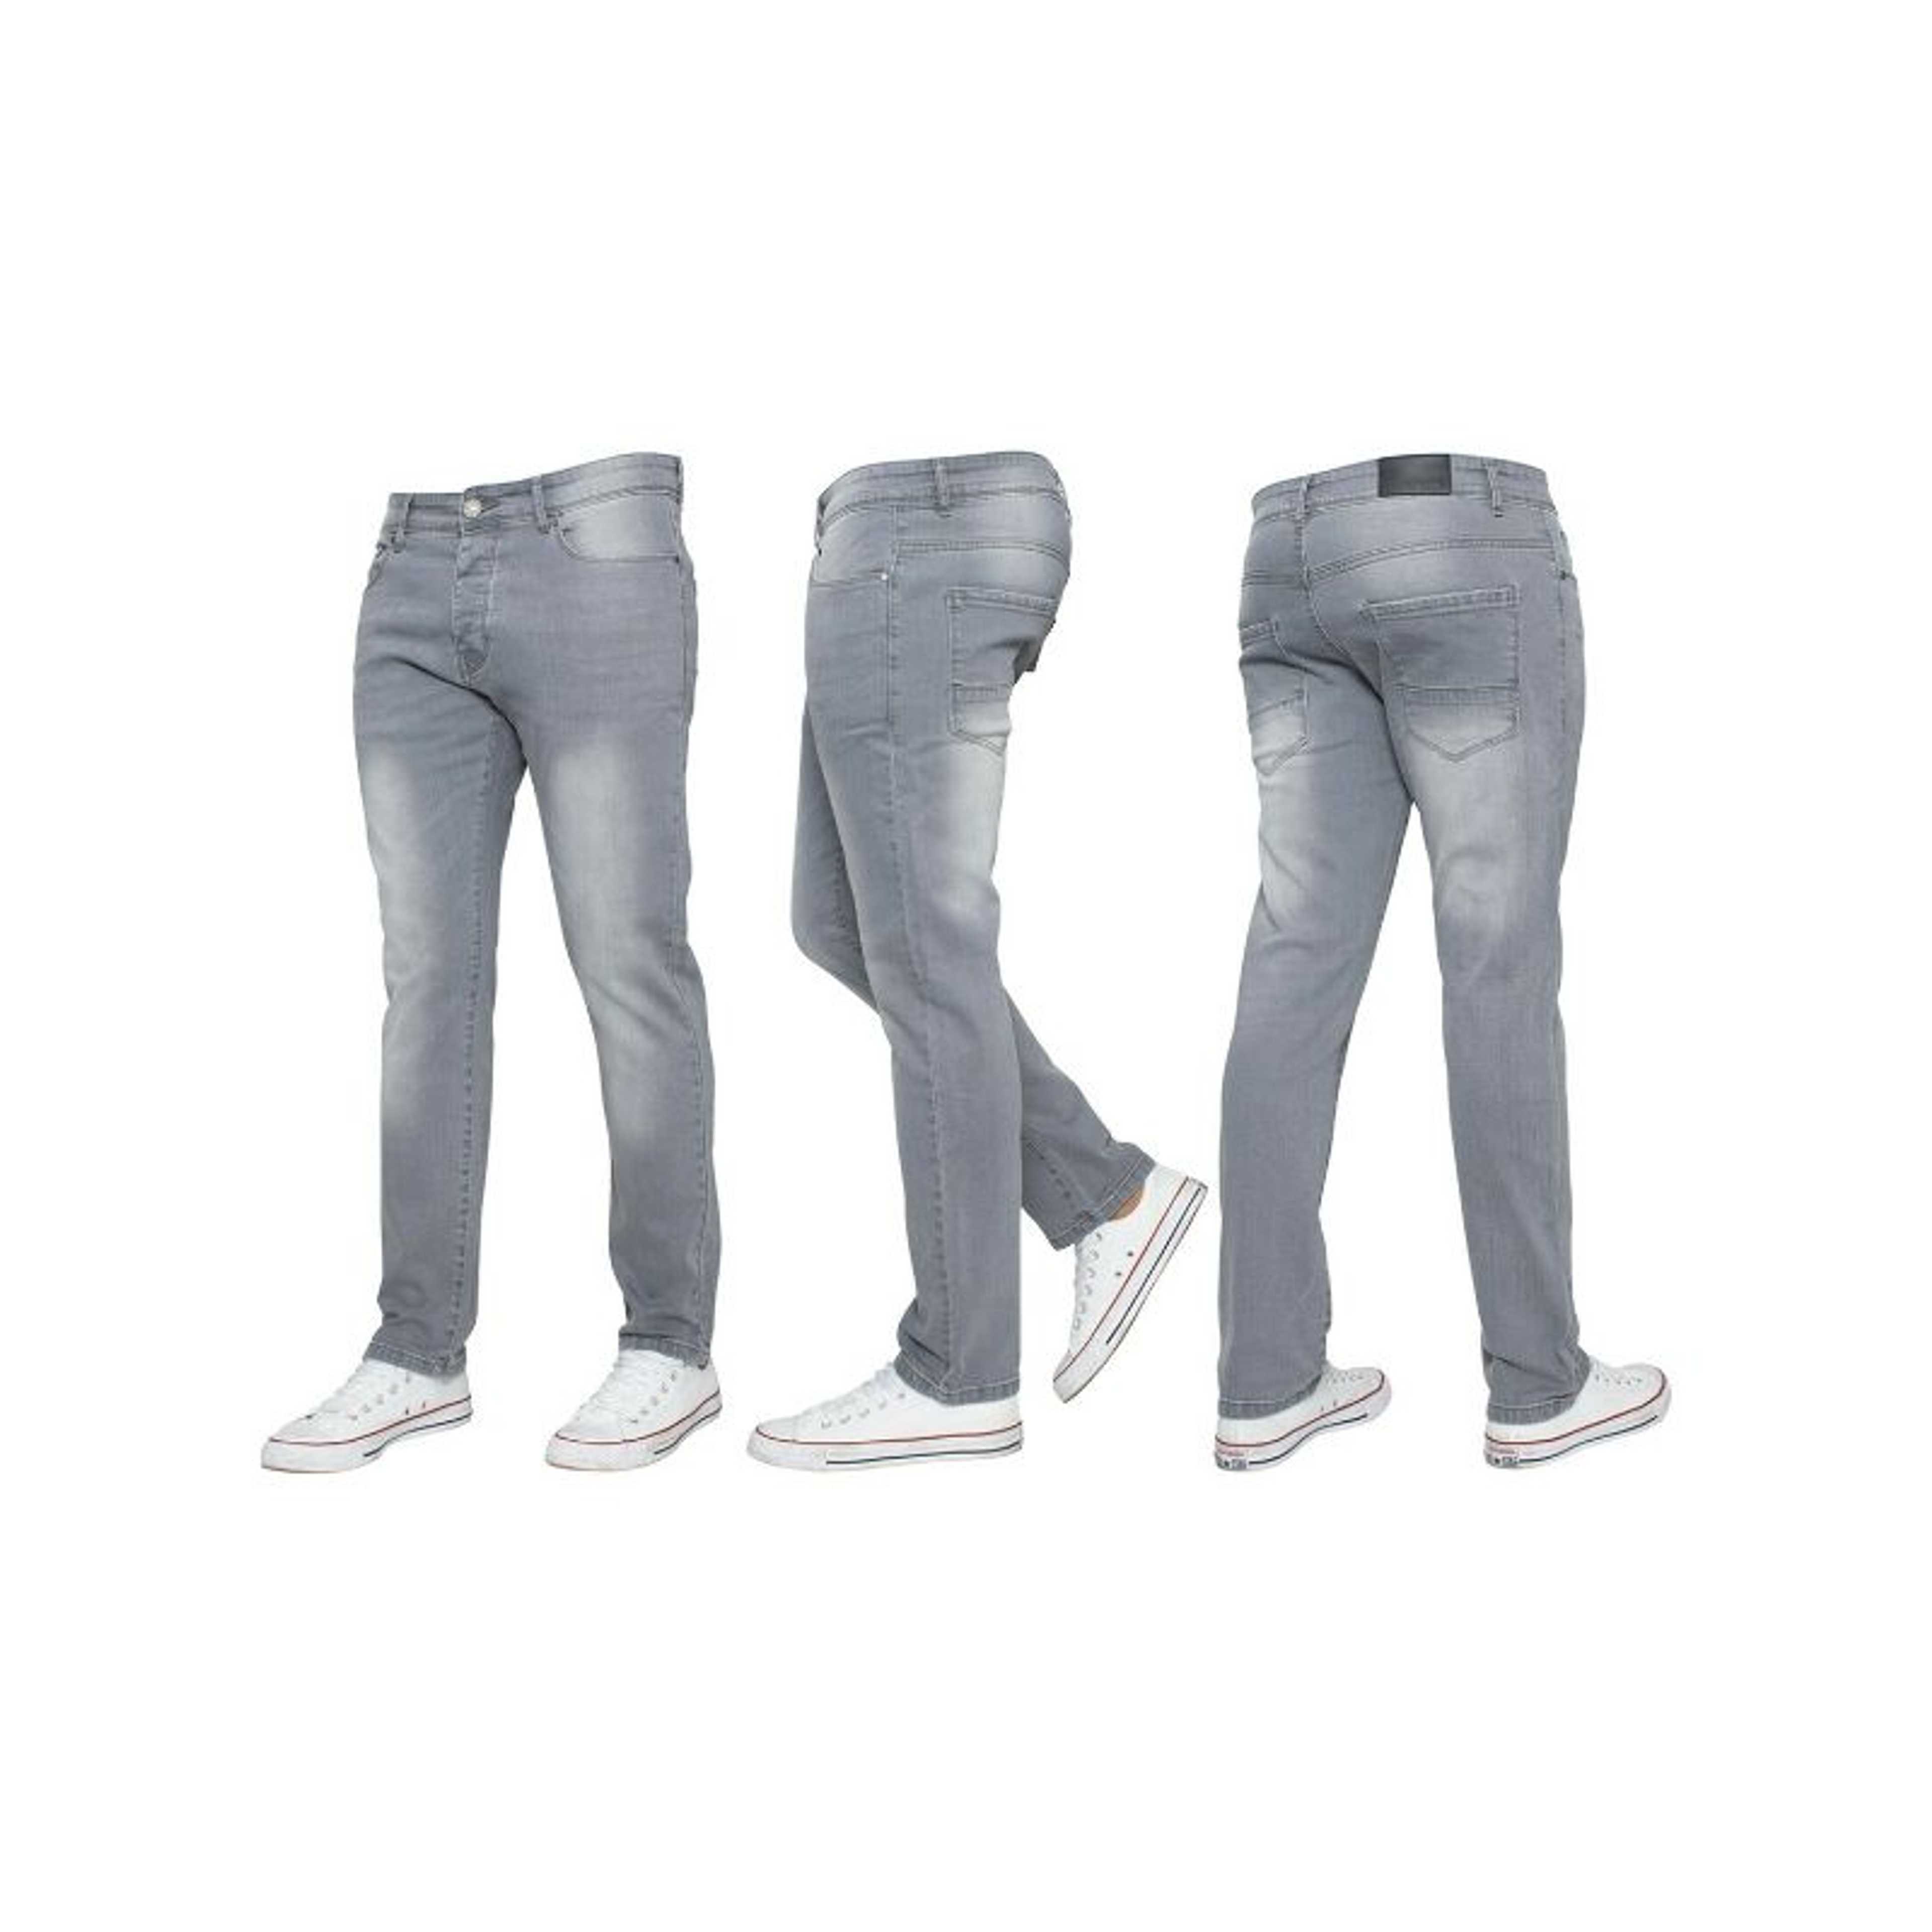 Rubahas Men’s Skinny Denim Jeans Pant in Grey color